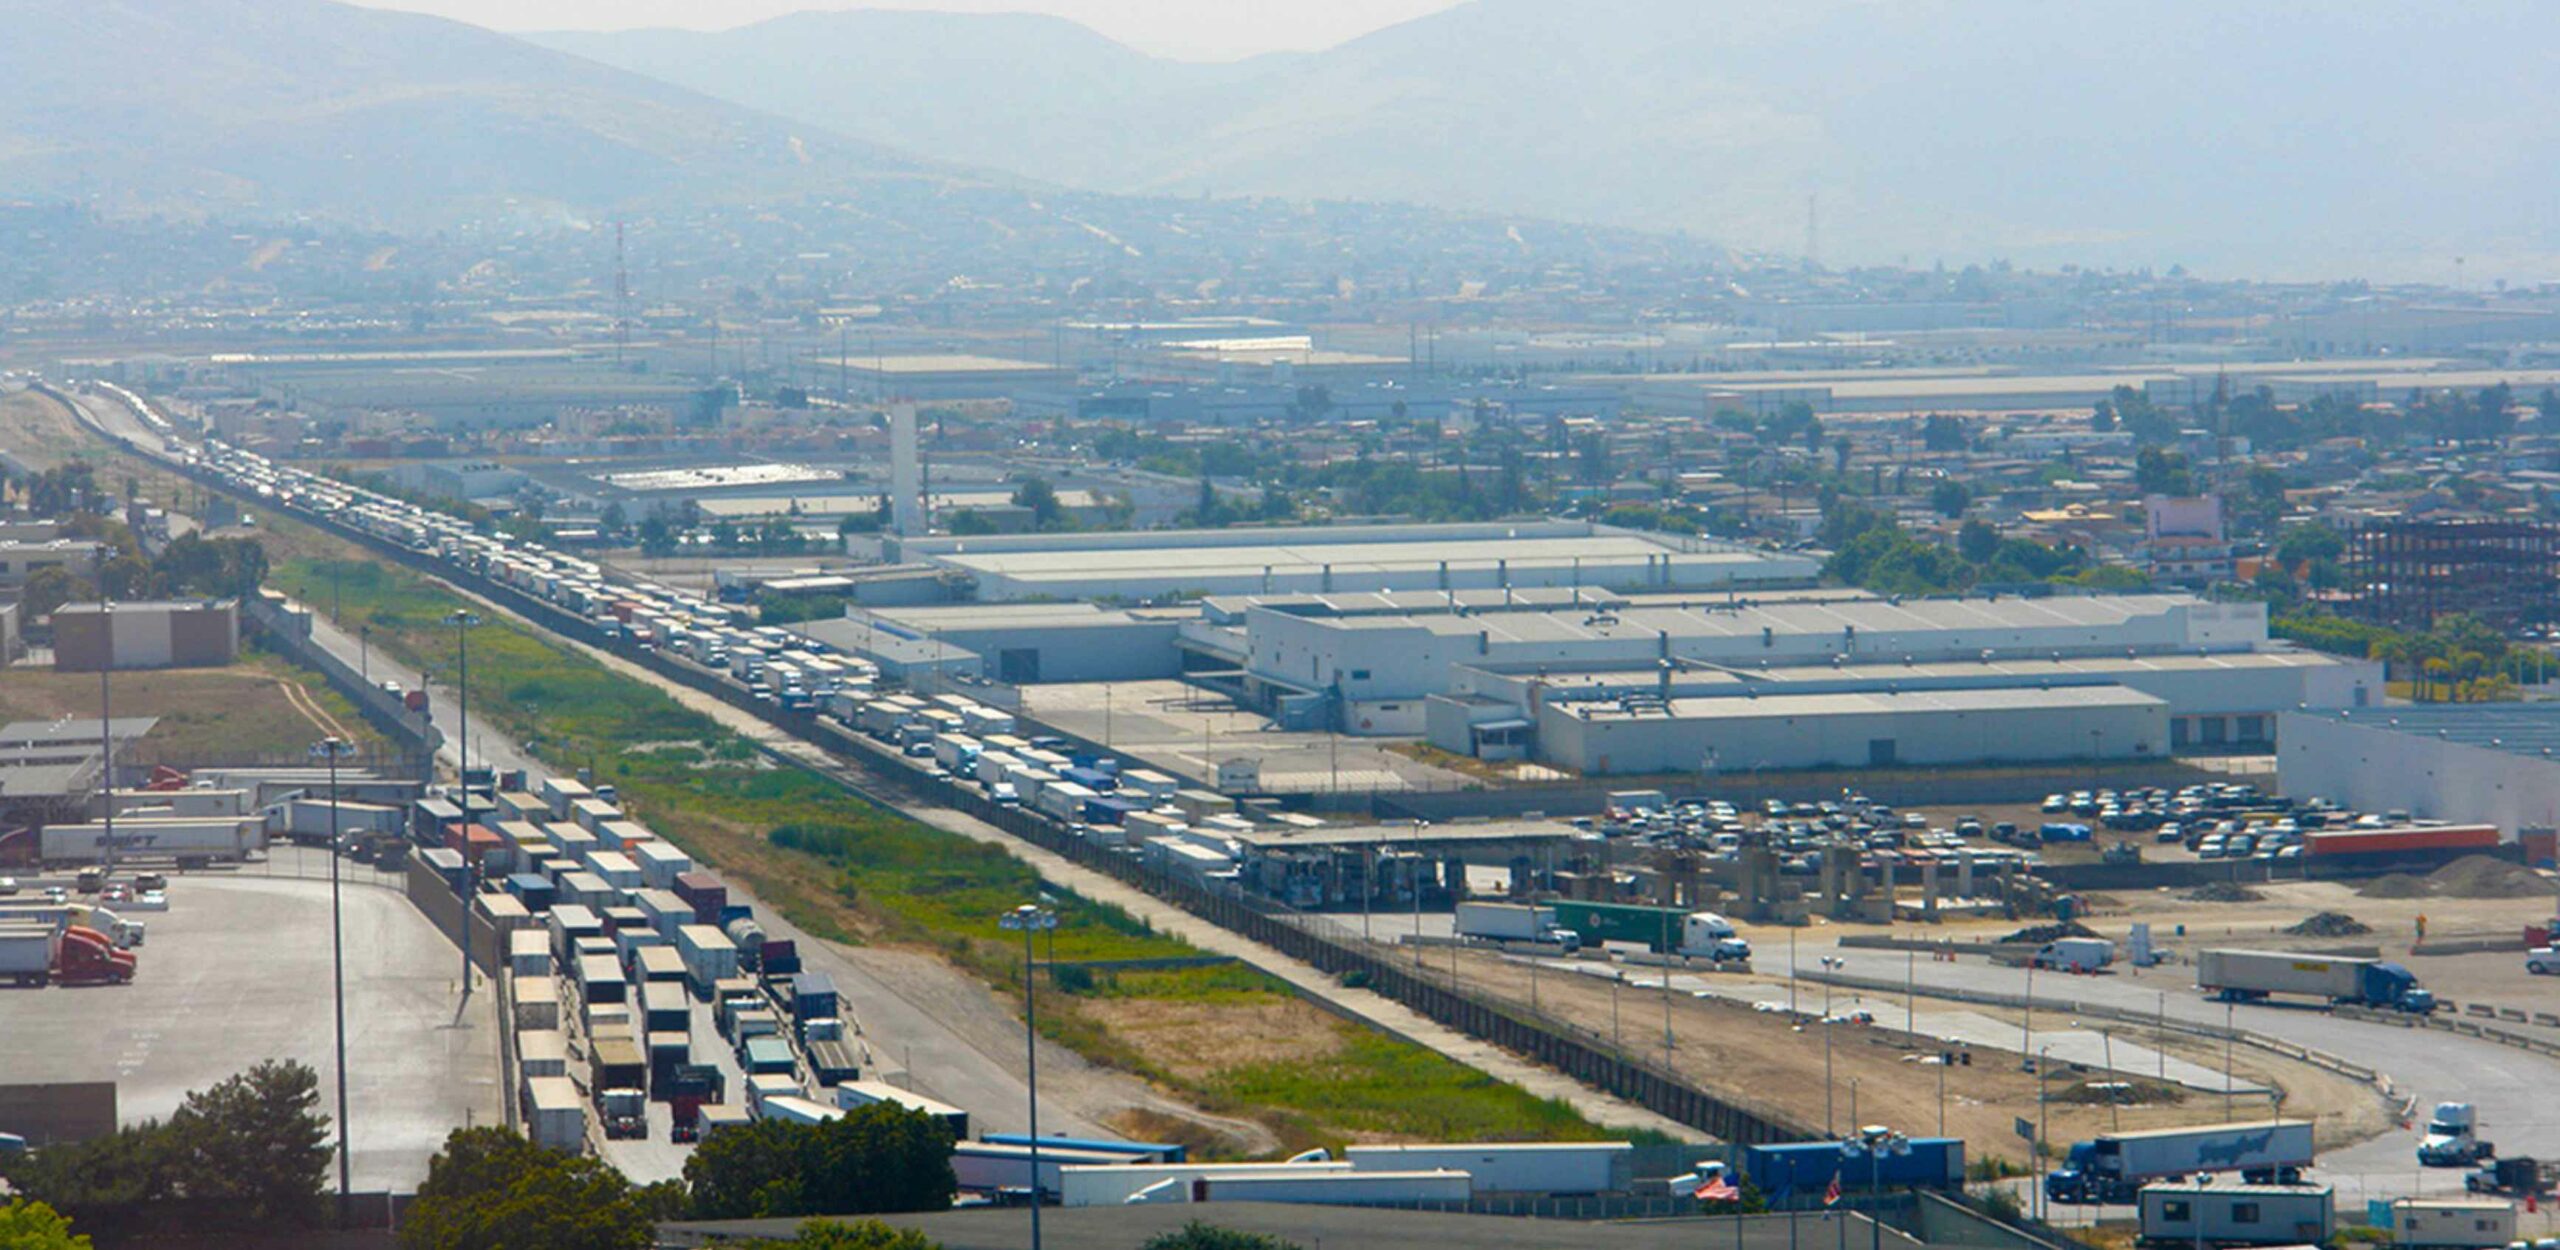 En 2016, la frontera California-Baja California fue cruzada aproximadamente 73 millones de veces por personas (individuos cruzando como peatones, en vehículos personales o autobuses), más de 31 millones de veces por vehículos personales y más de 1 millón de veces por vehículos comerciales (camiones), solo en dirección norte. Aproximadamente el 70% de todas las personas cruzaron a través de los POE de San Diego, mientras que el 30% lo hizo a través del condado de Imperial. De los más de 1 millón de cruces de camiones, los POE de Otay Mesa, Calexico Este y Tecate procesaron el 70%, el 26% y el 4% del total, respectivamente.